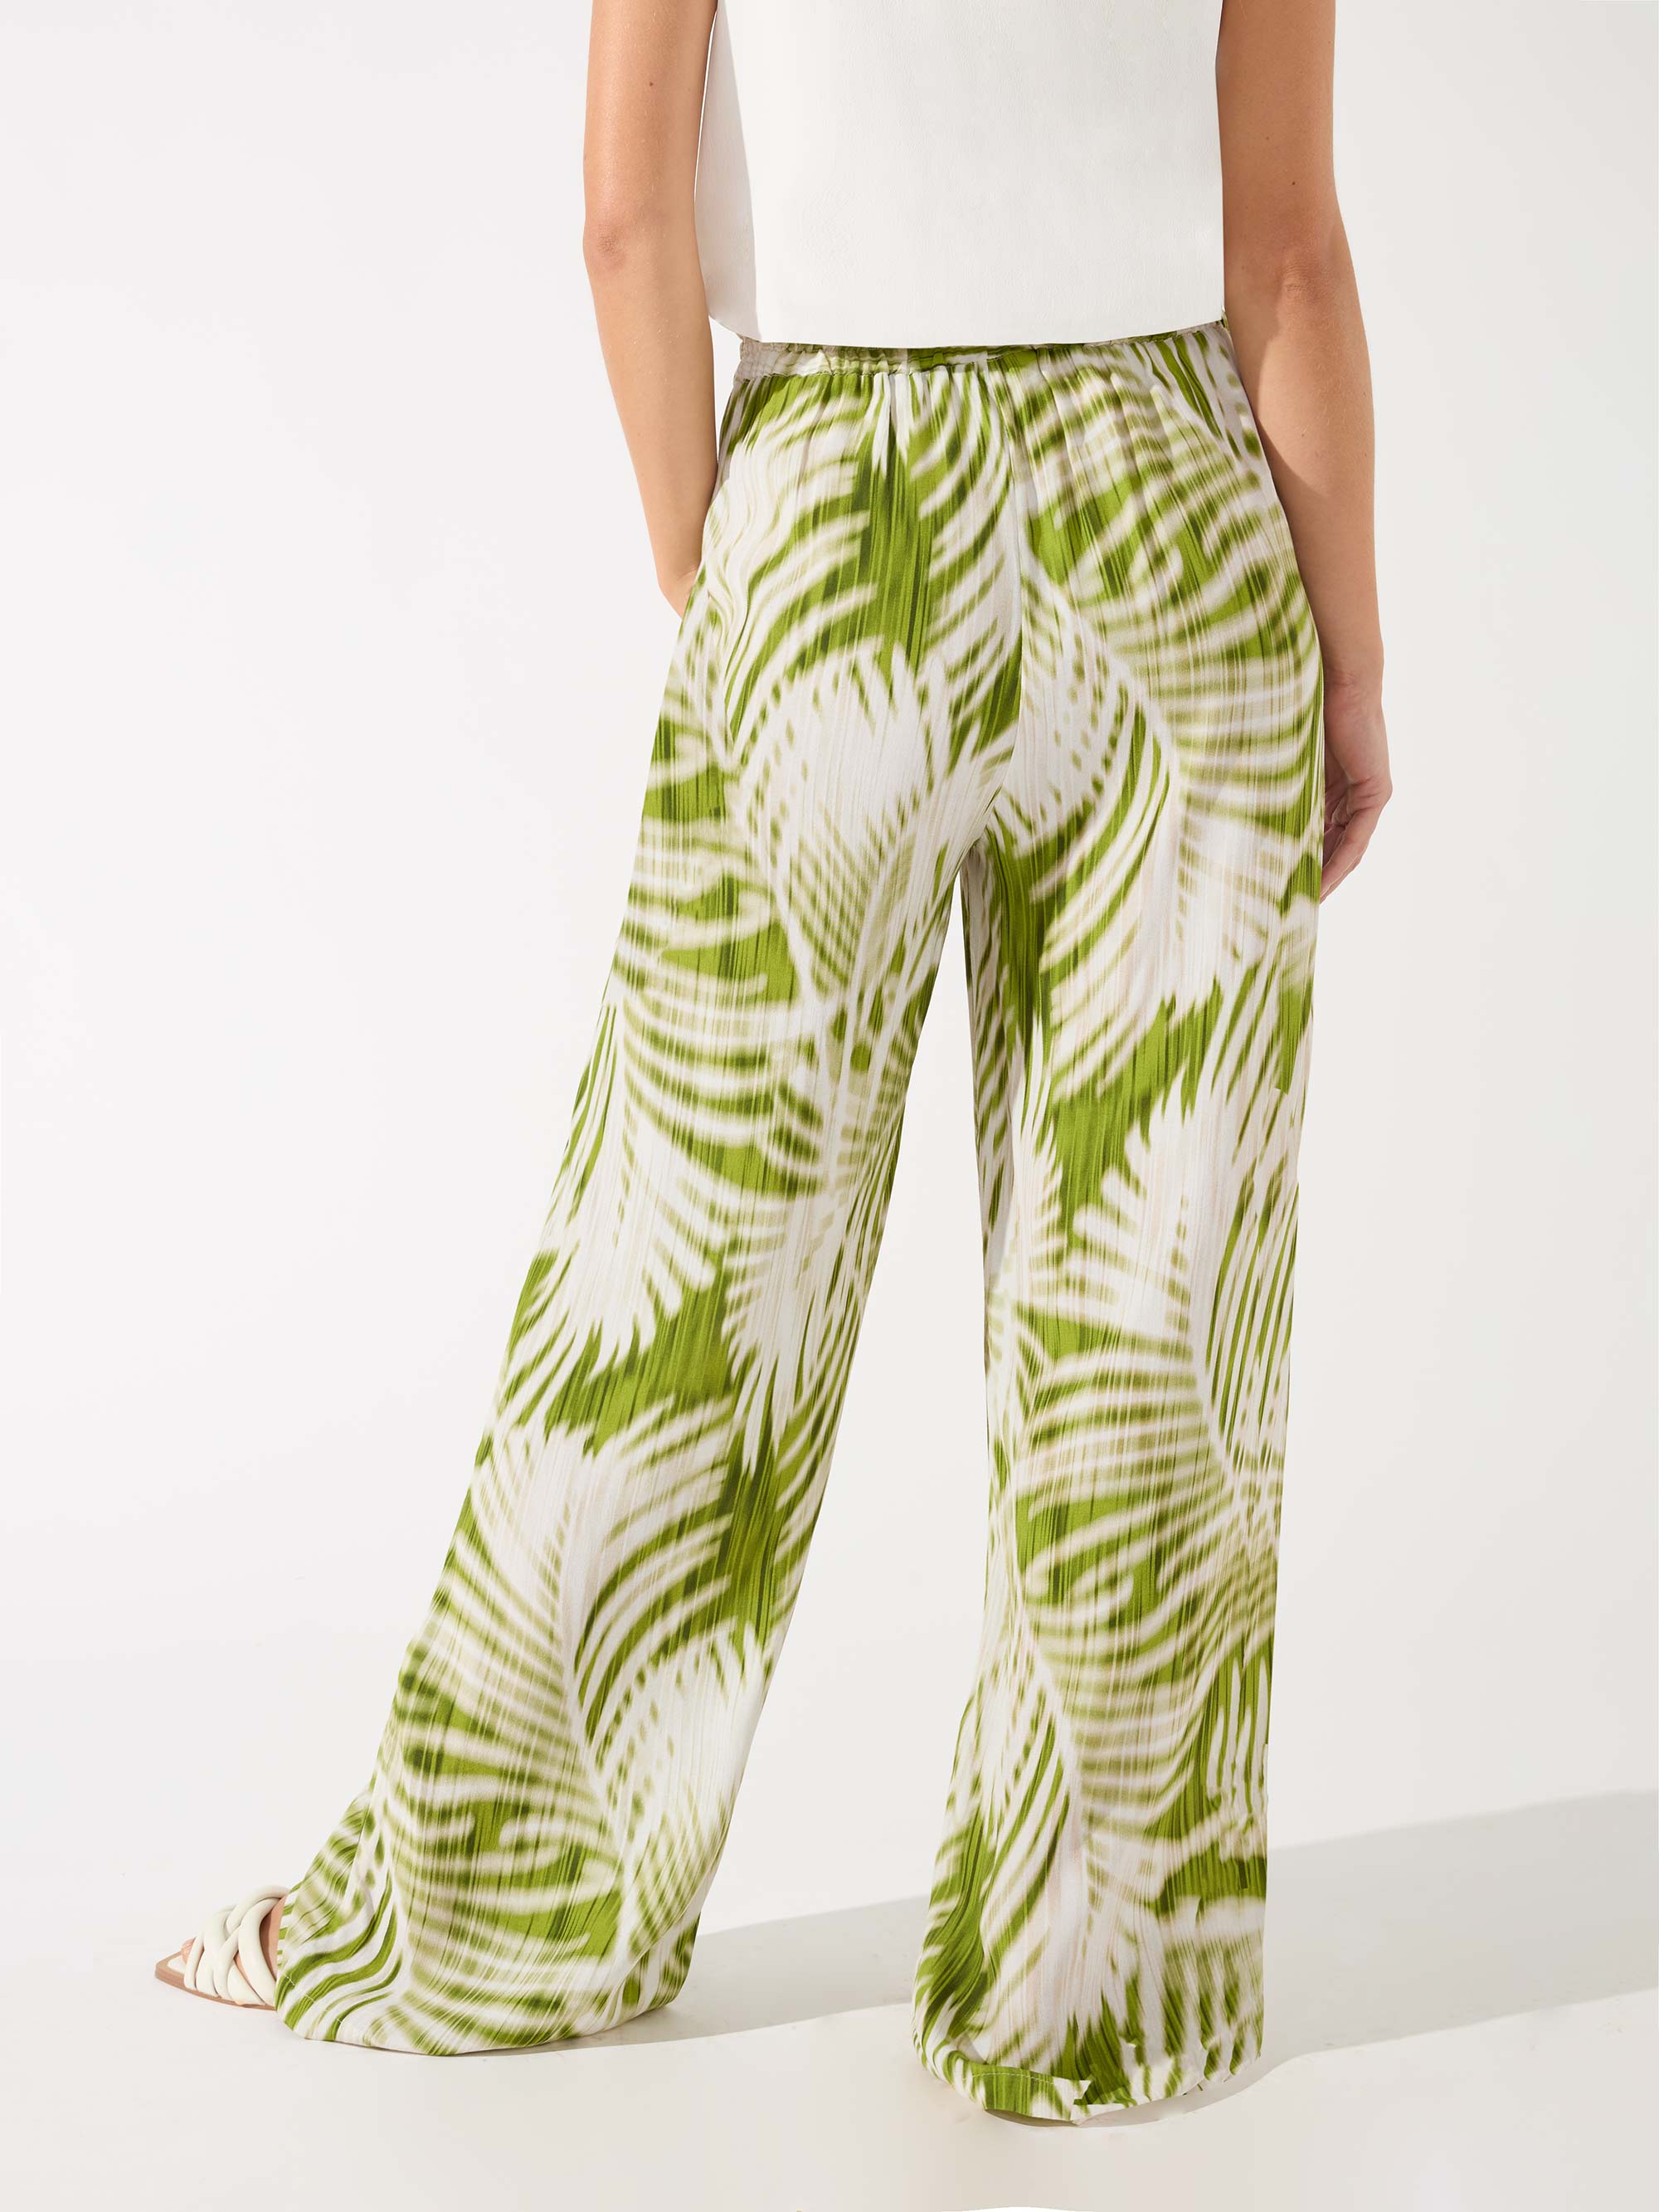 Women's size 6 petite cropped pattern pants from... - Depop